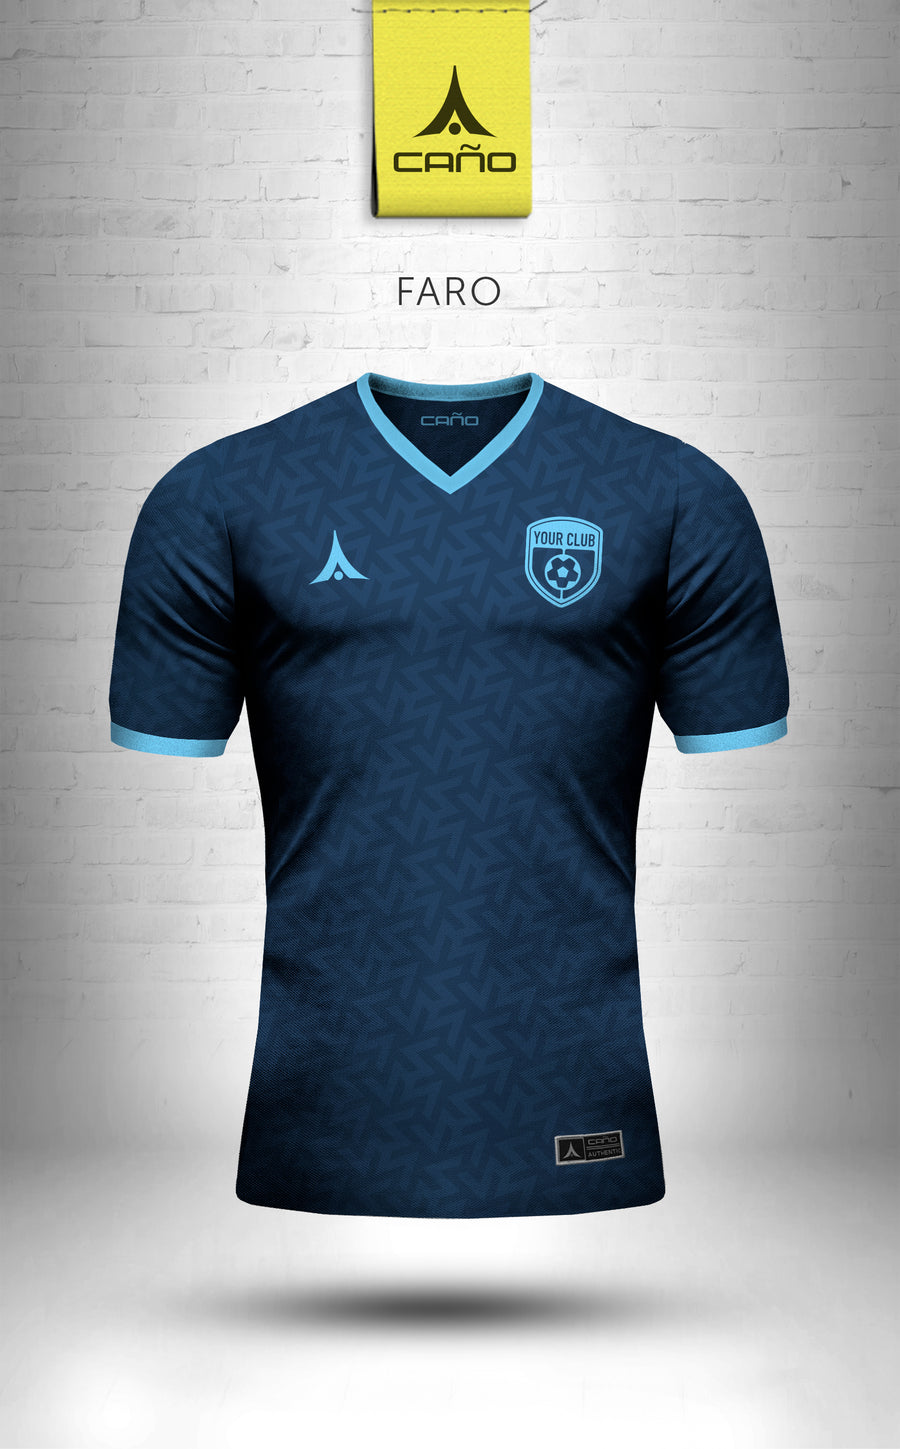 Faro in navy/light blue